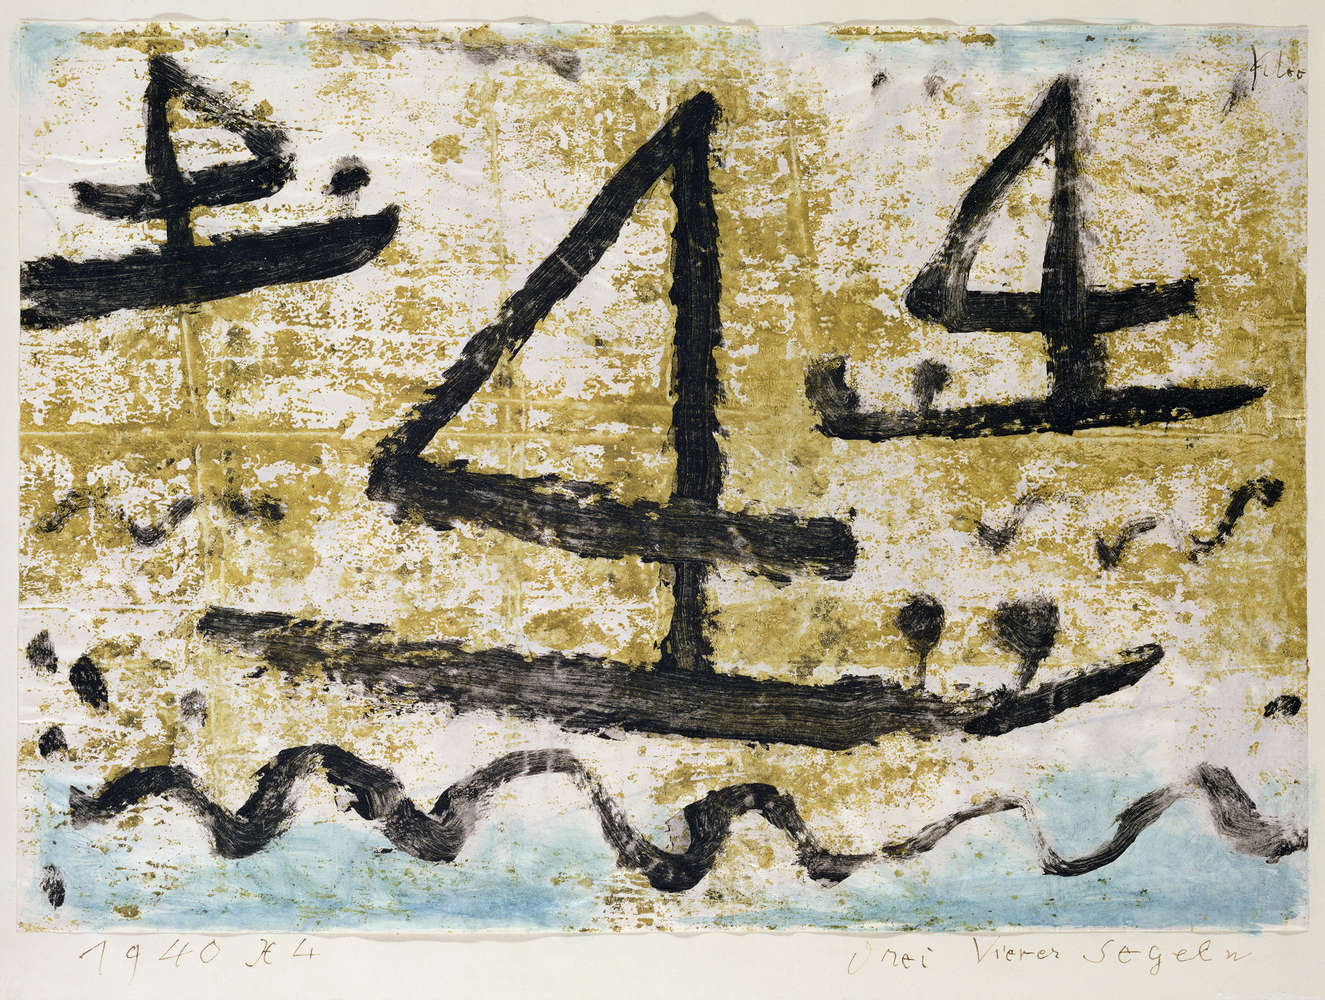             Fotomurali "Navi a vela" di Paul Klee
        